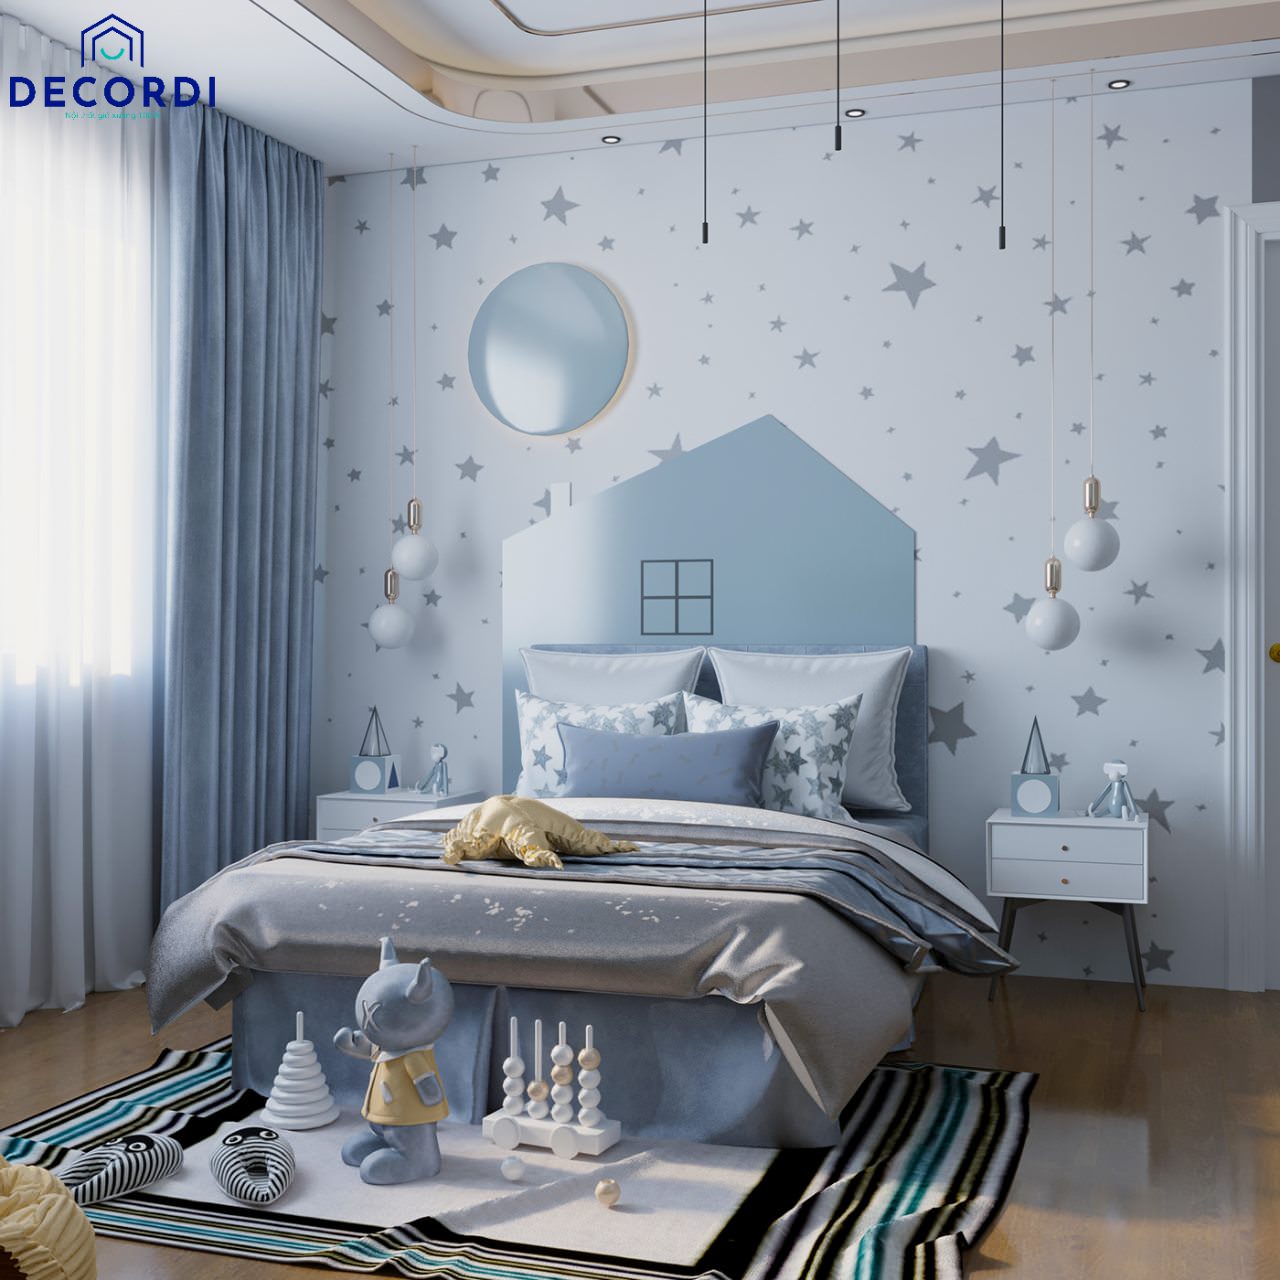 Mẫu phòng ngủ với tone màu xanh được thiết kế tiện nghi và hiện đại cho bé gái